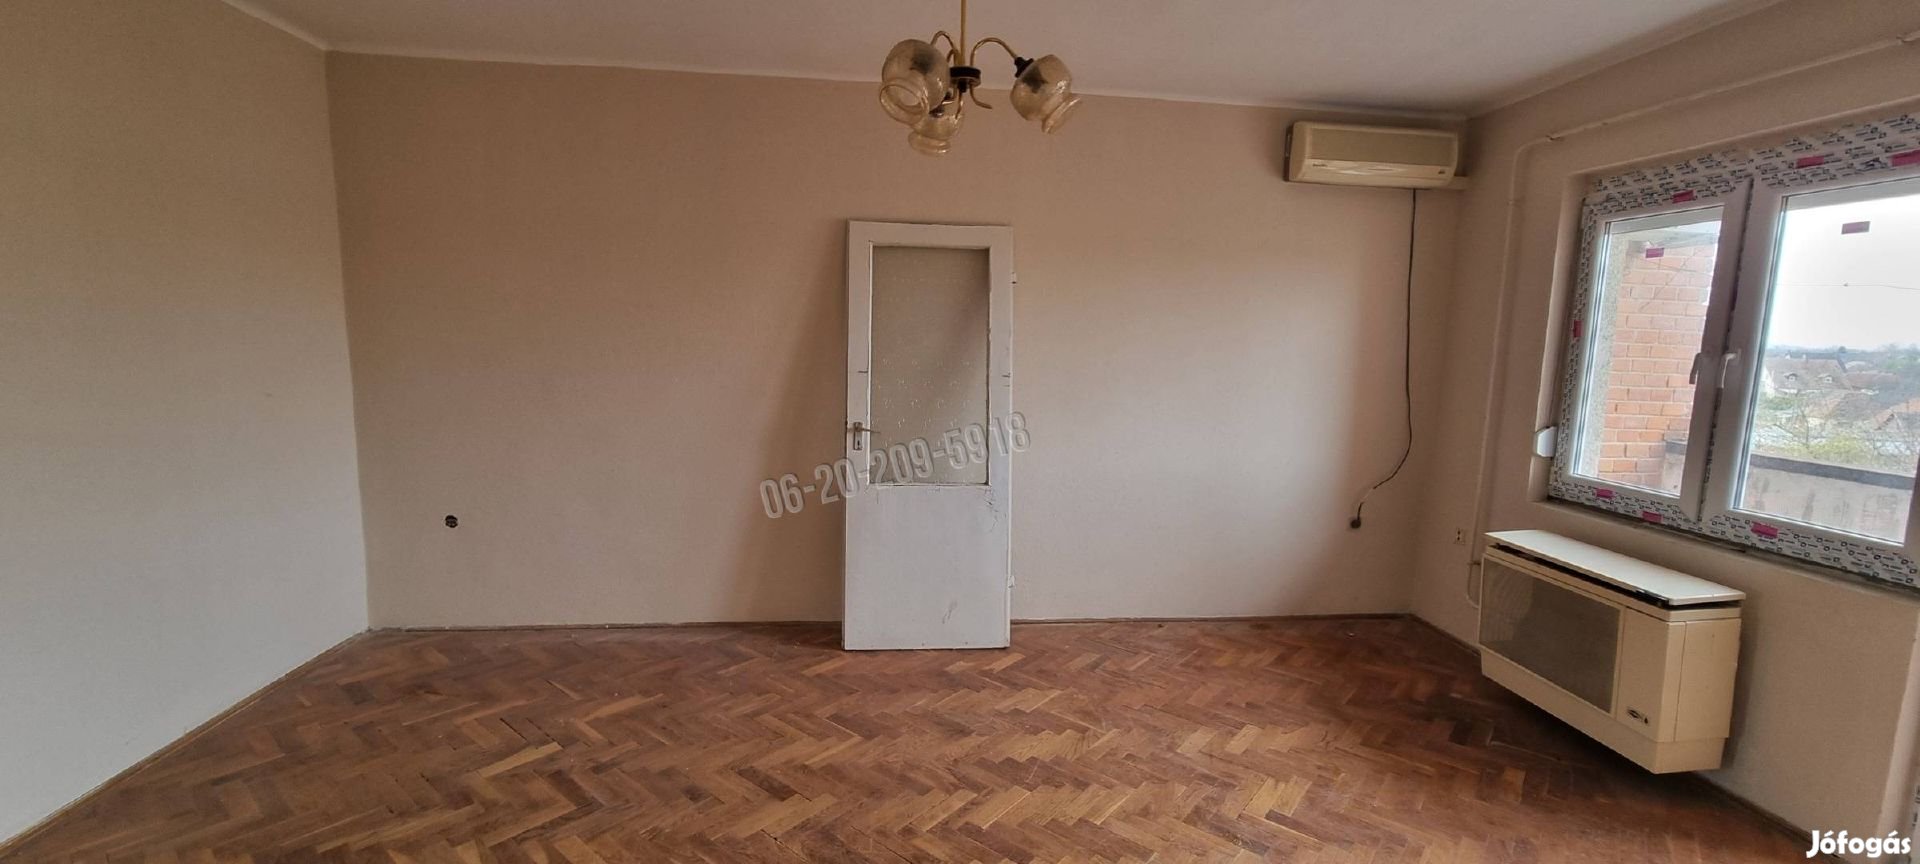 Eladó lakás, Kalocsa Széchenyi-lakótelep, Széchenyi utca, 23900 887_gz